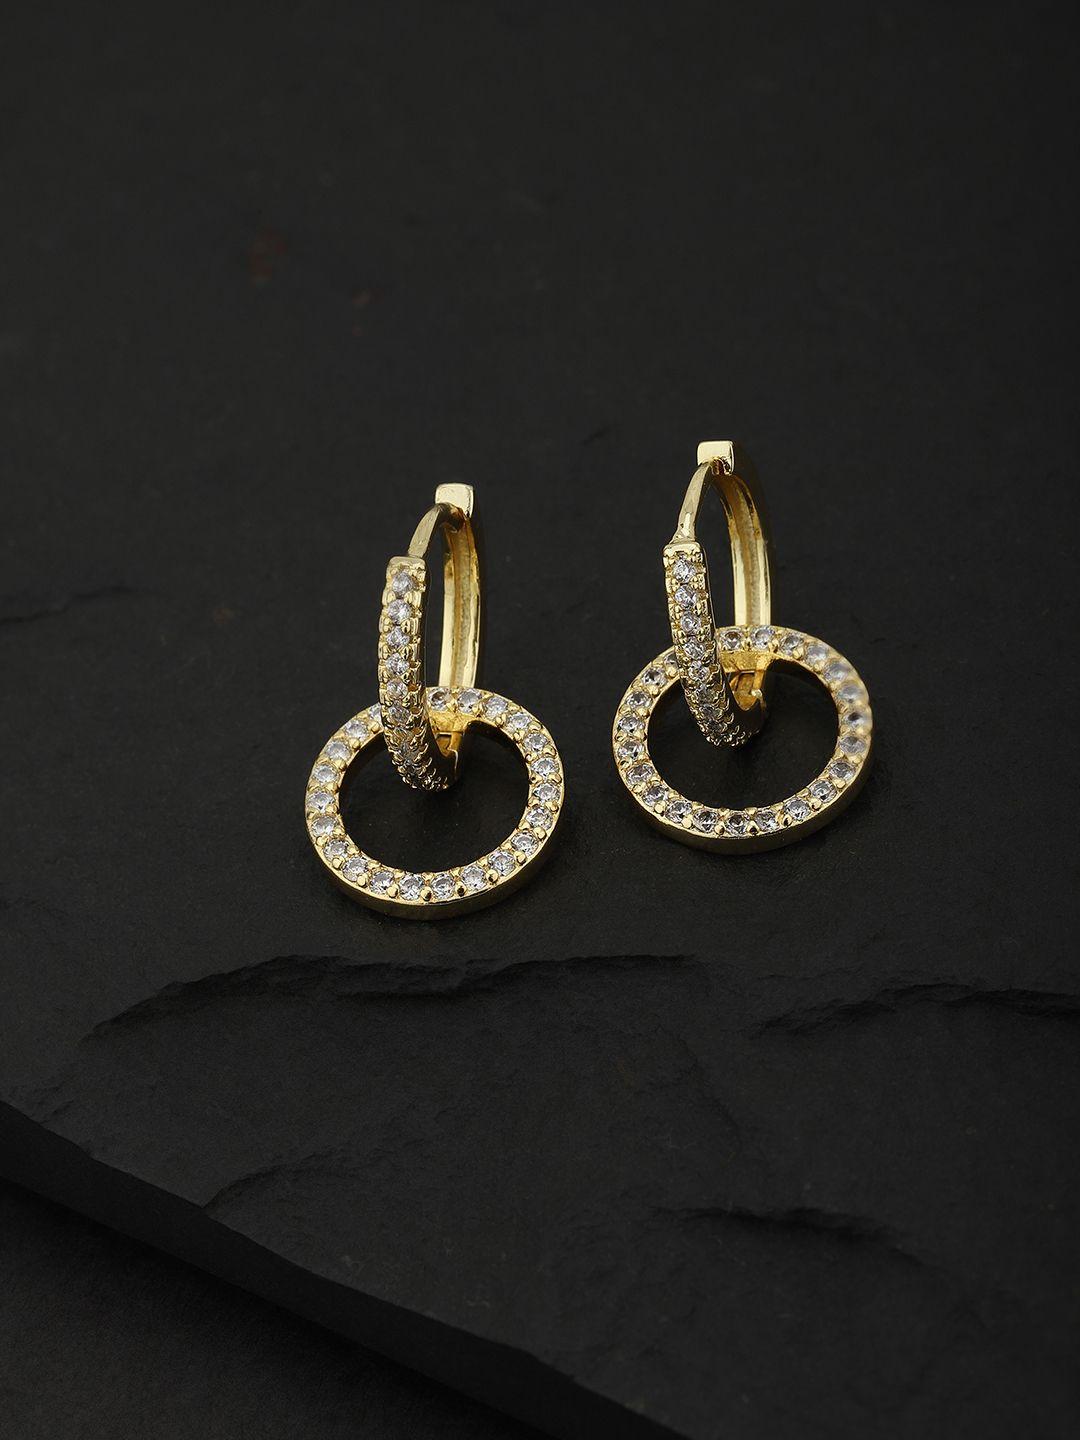 carlton london gold-toned circular hoop earrings